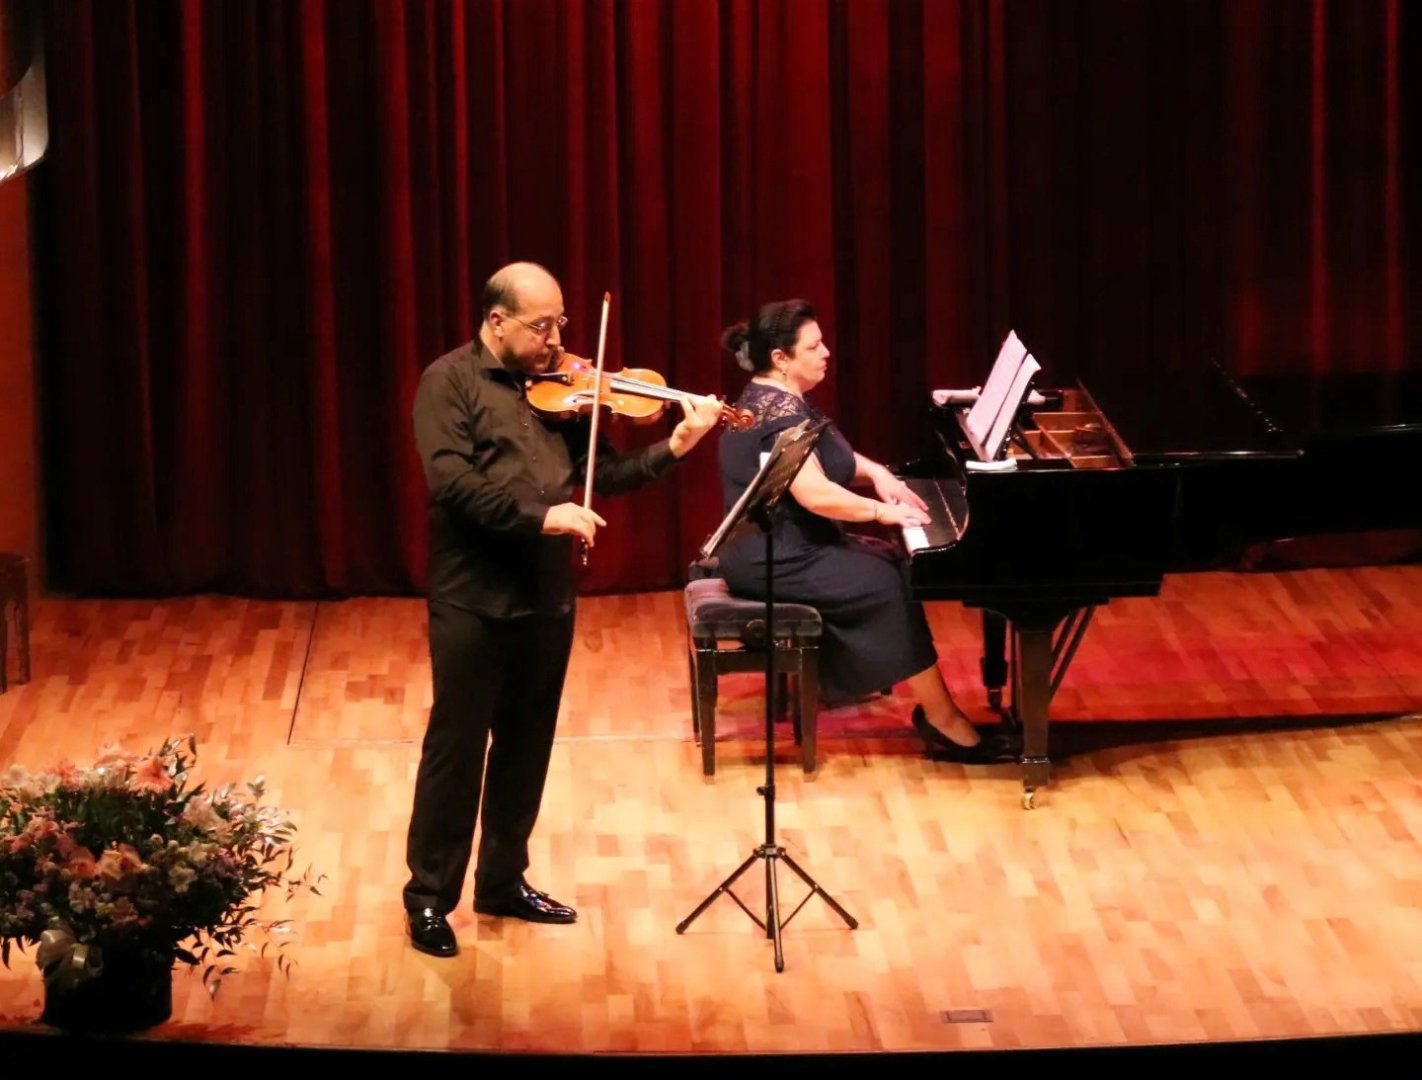 Звуки скрипки пленили сердца и вызвали восторг: концерт Ровшана Музаффарова в Баку (ФОТО)